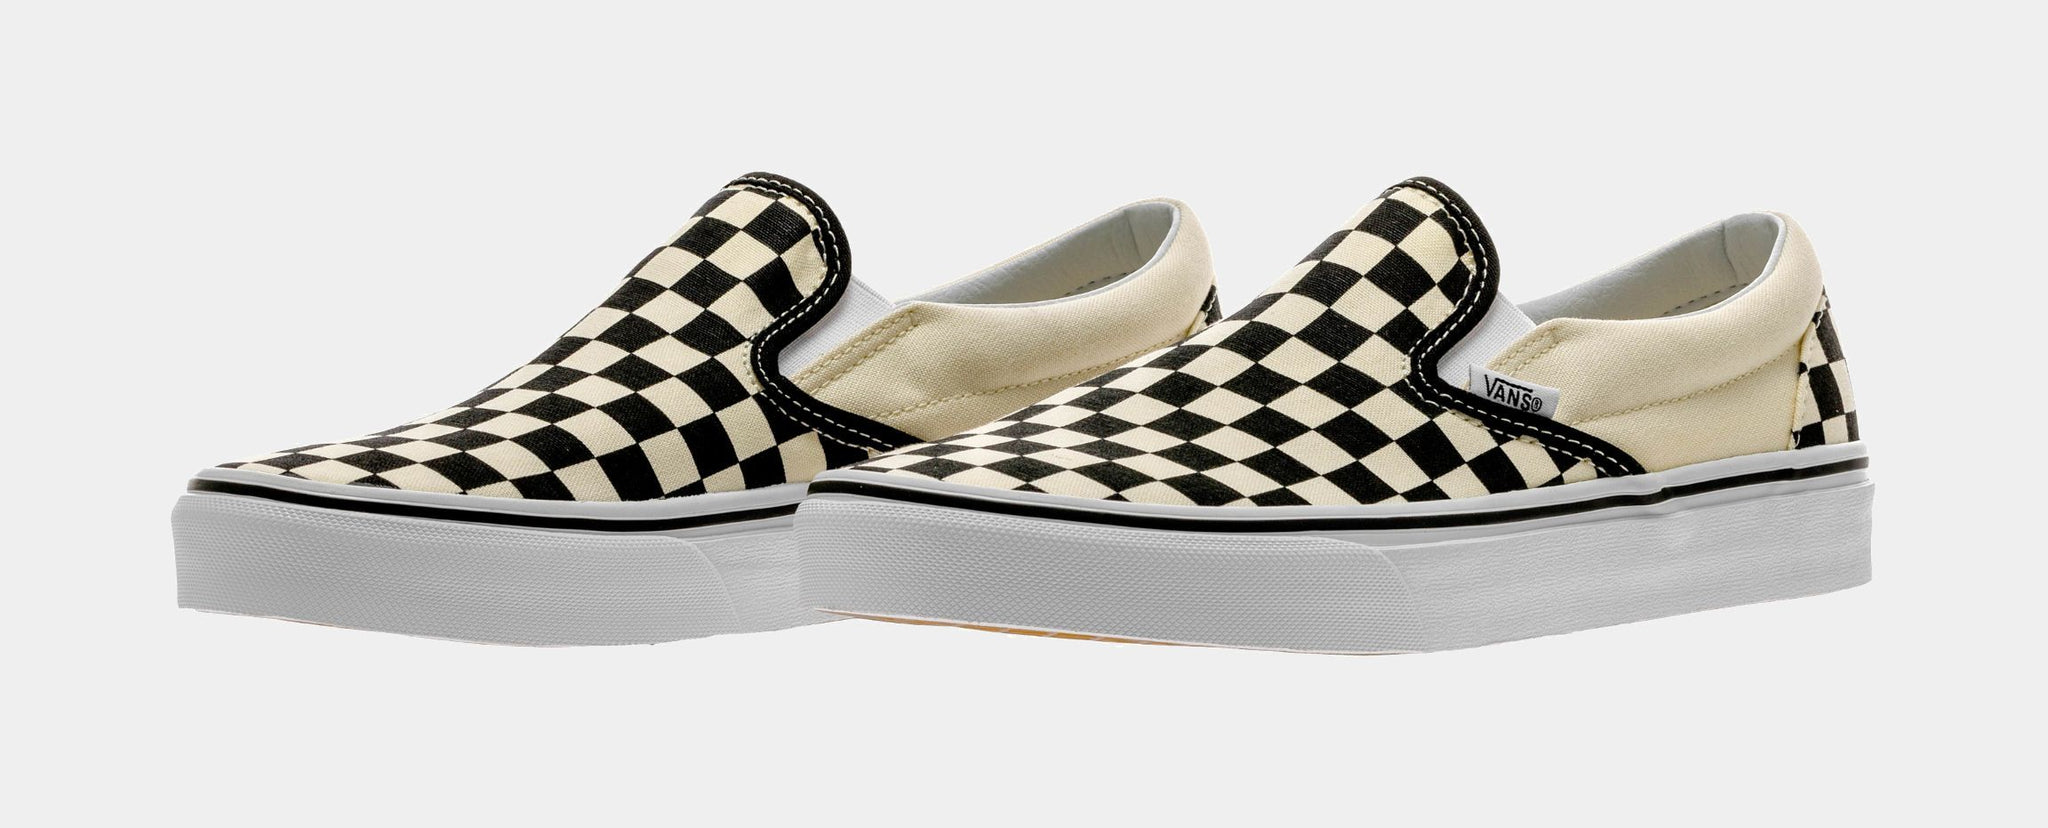 Vans Checkerboard Skate Slip-On Shoes Black/White / 11.5